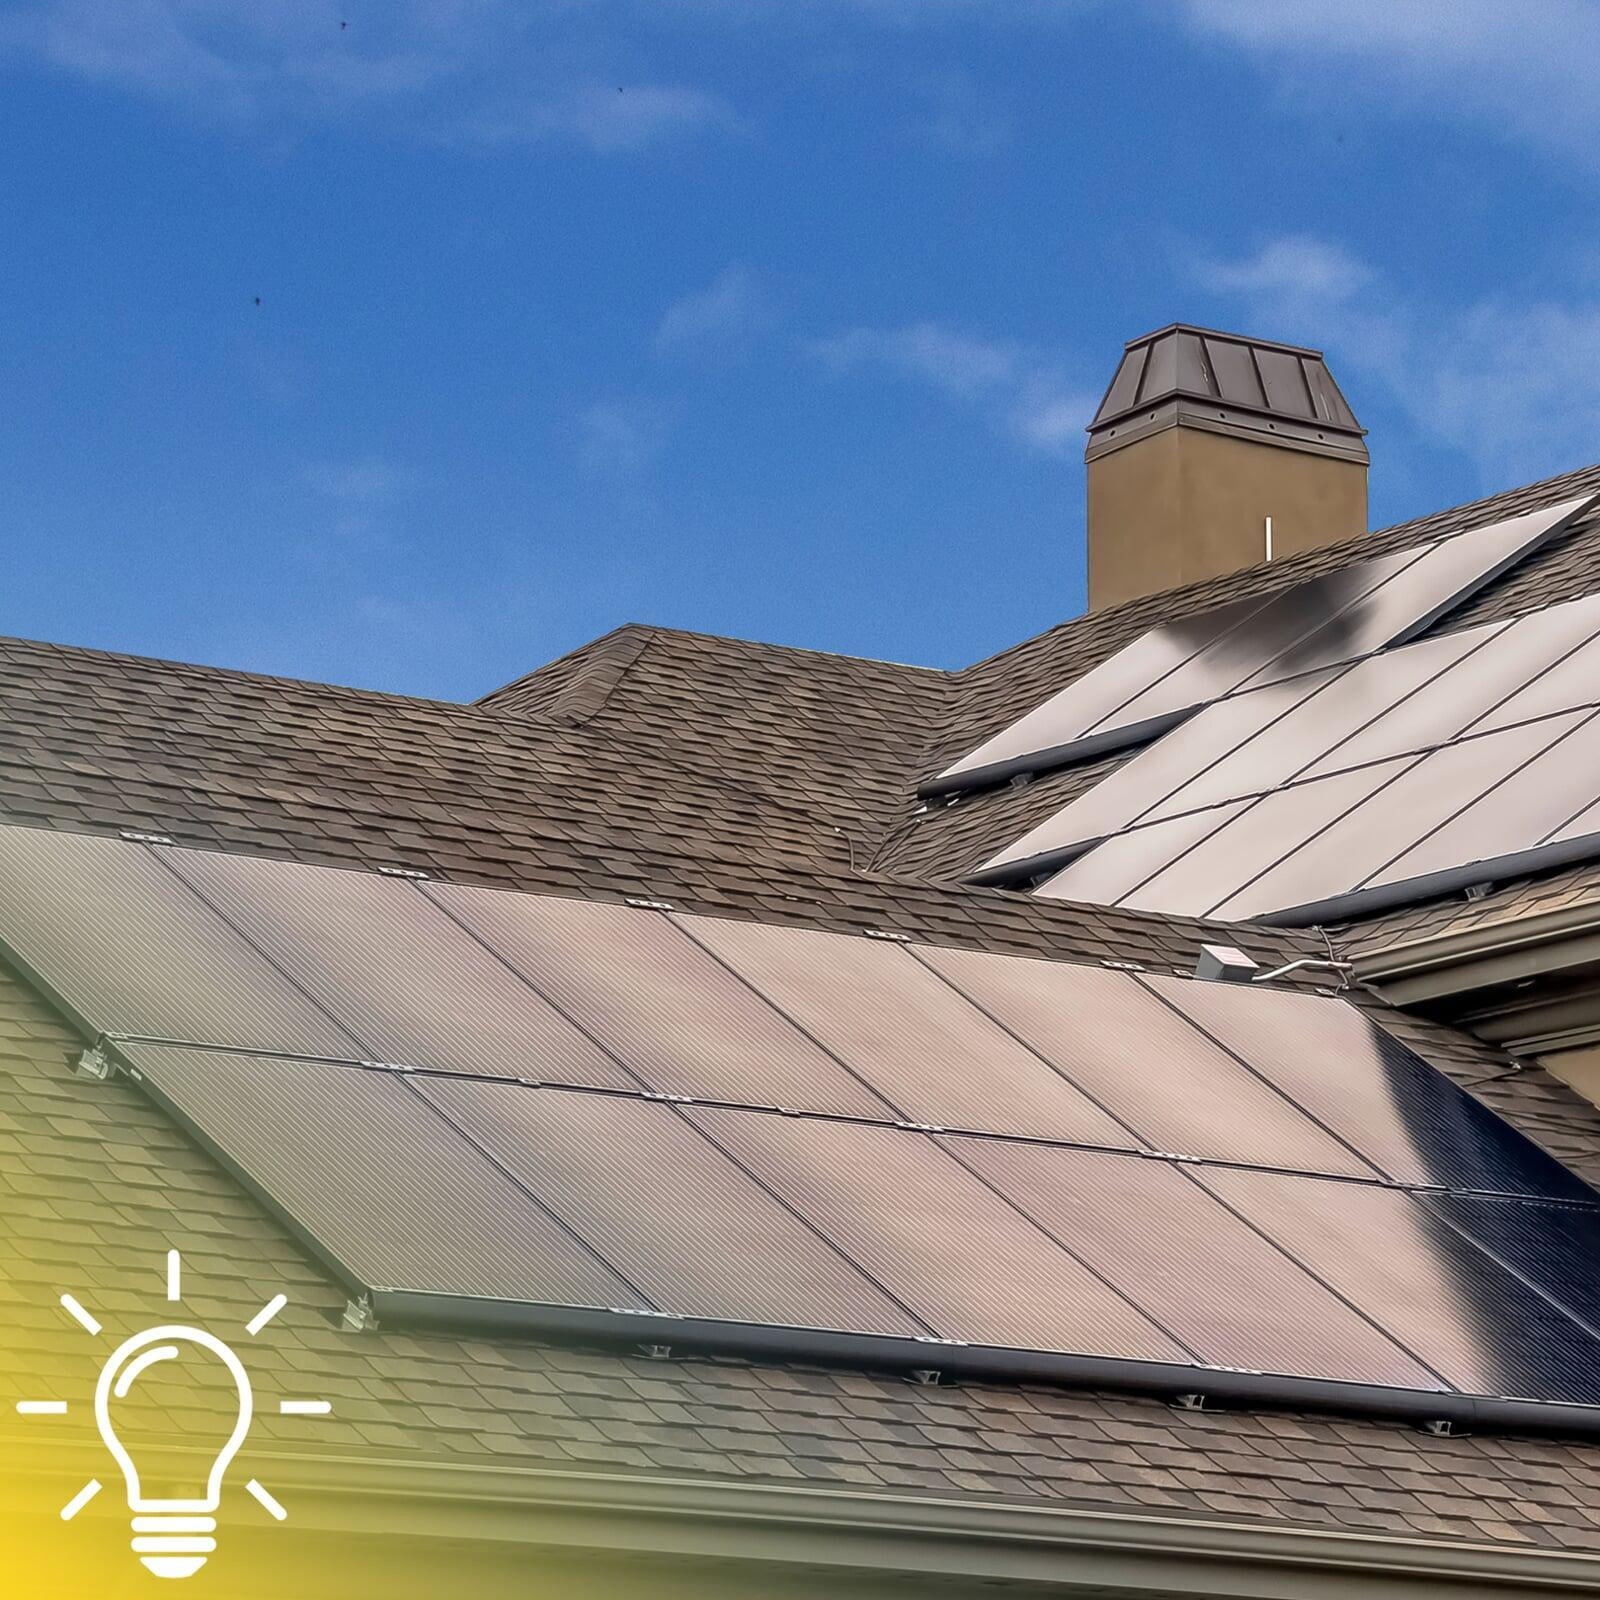 How do Solar Panels Work?